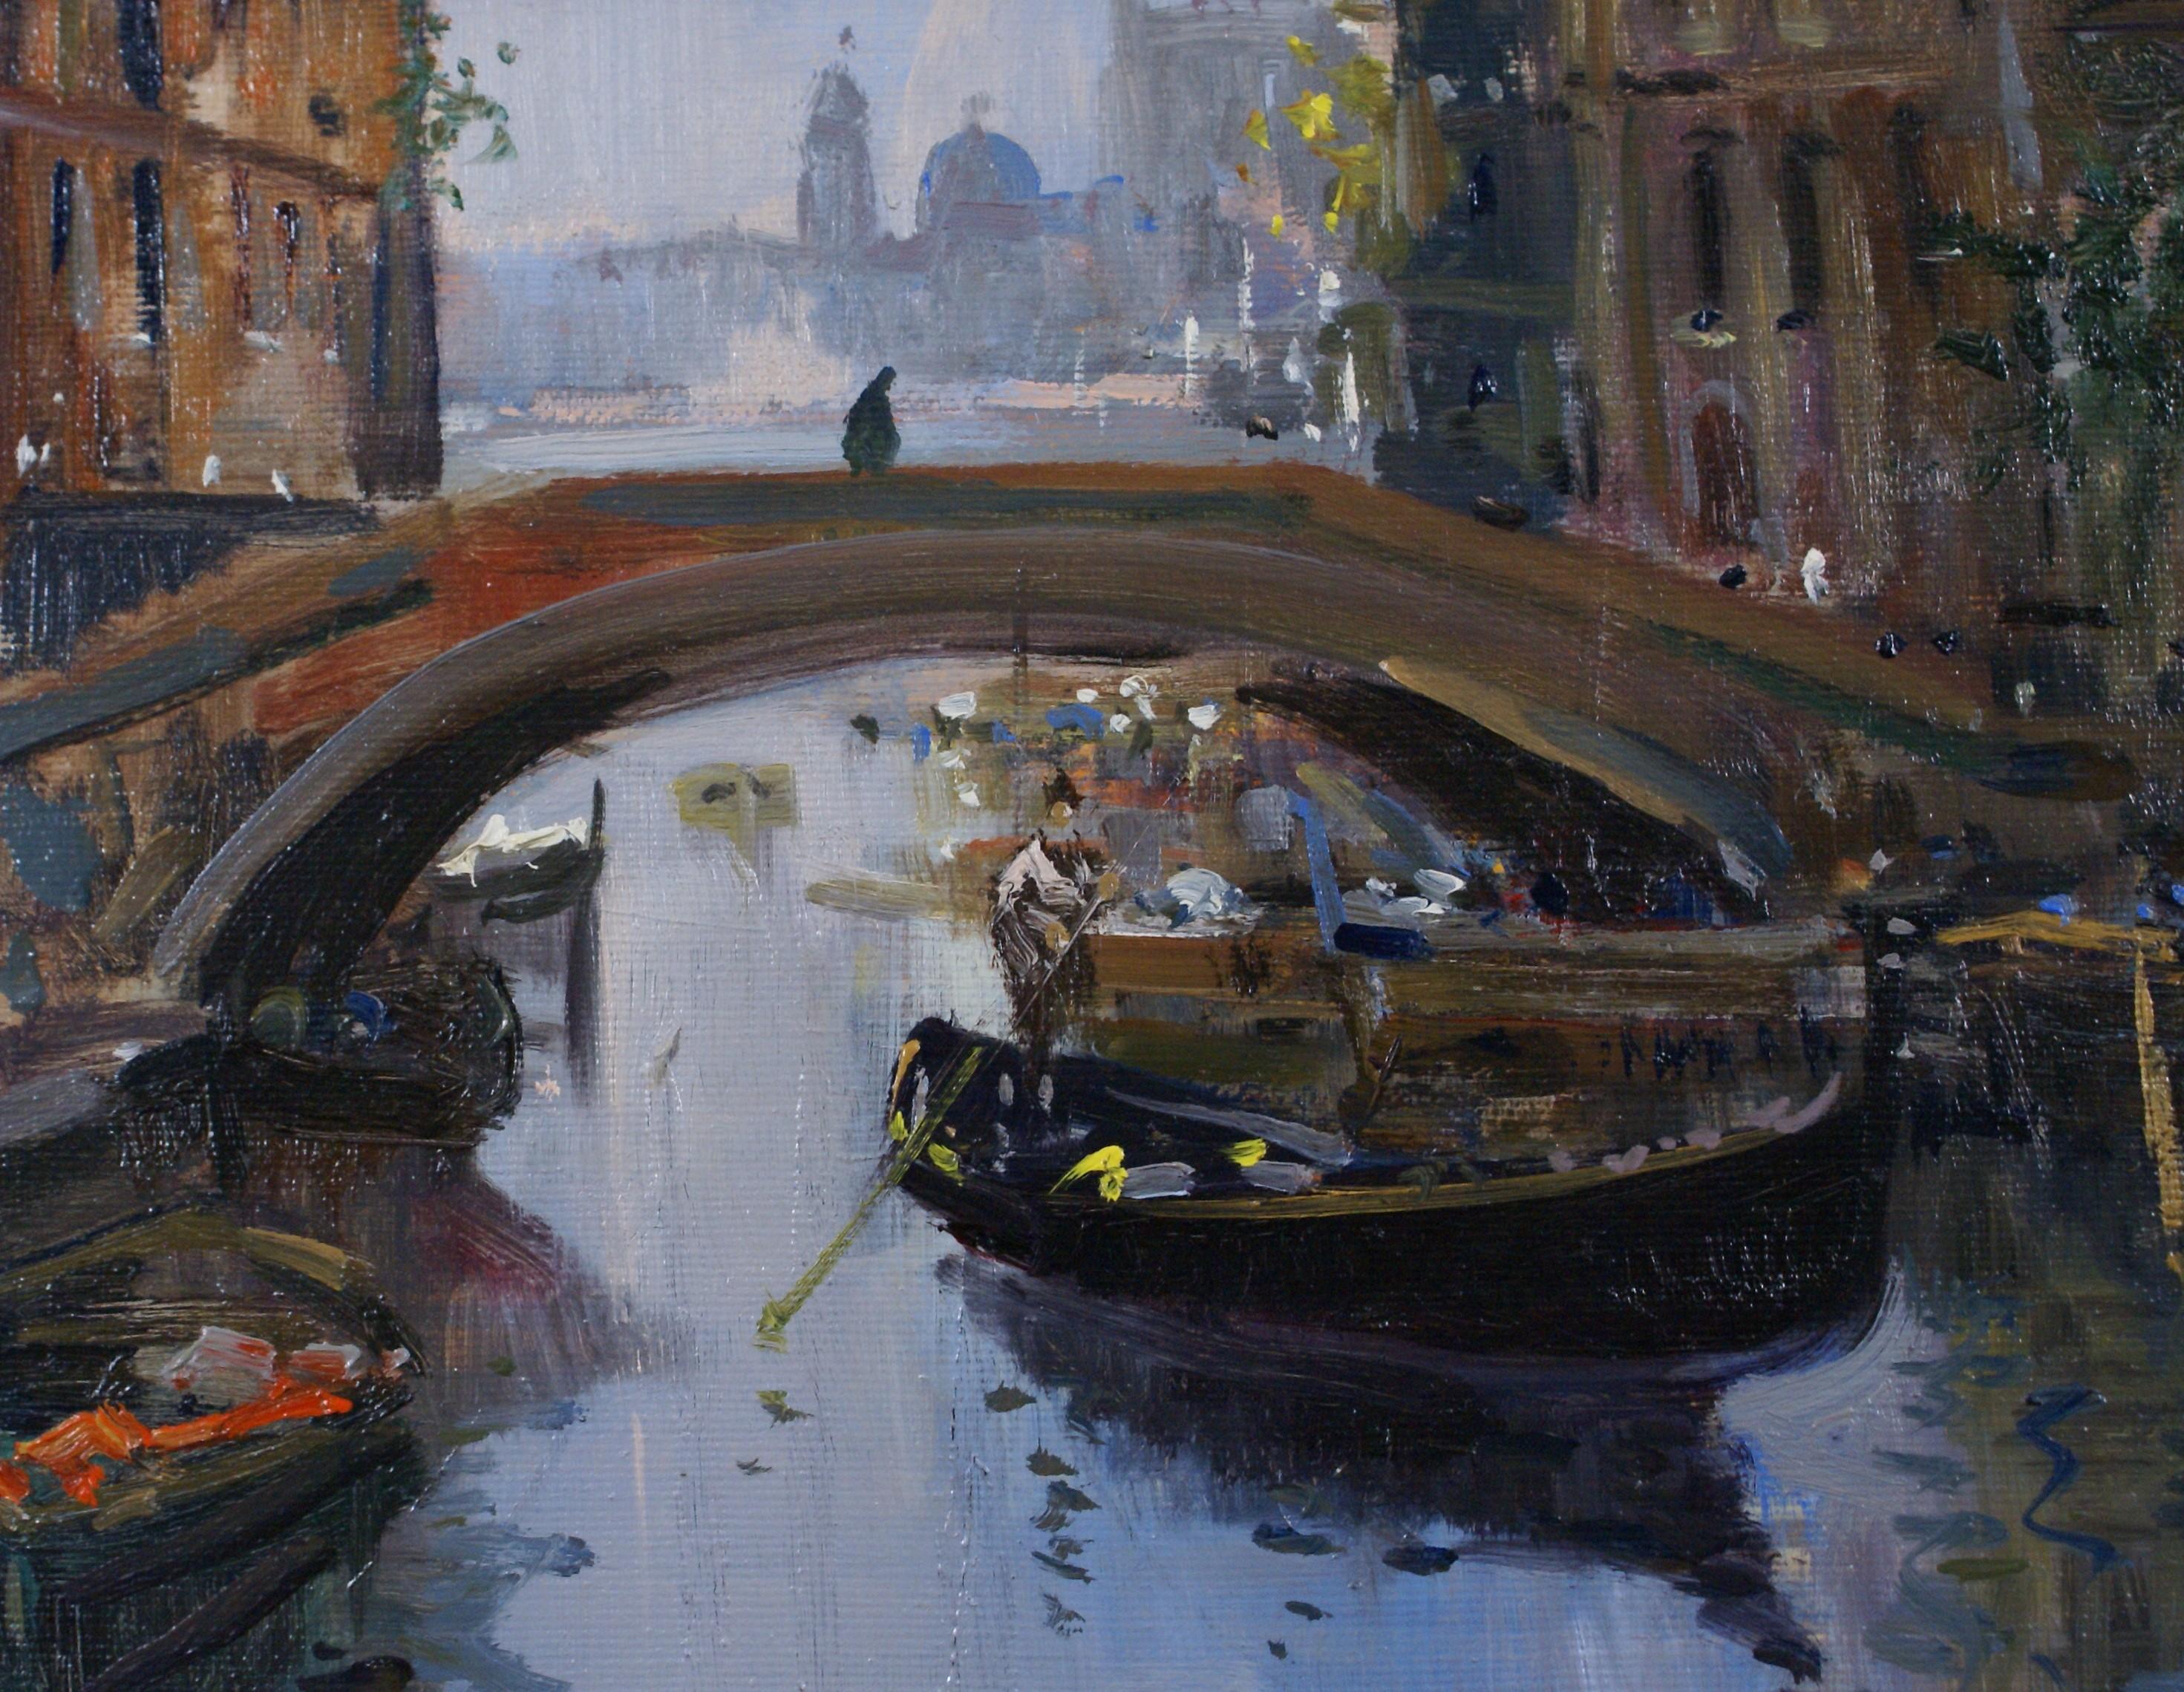 Rio di Venezia (River of Venice) - Painting by Eniko Esposito